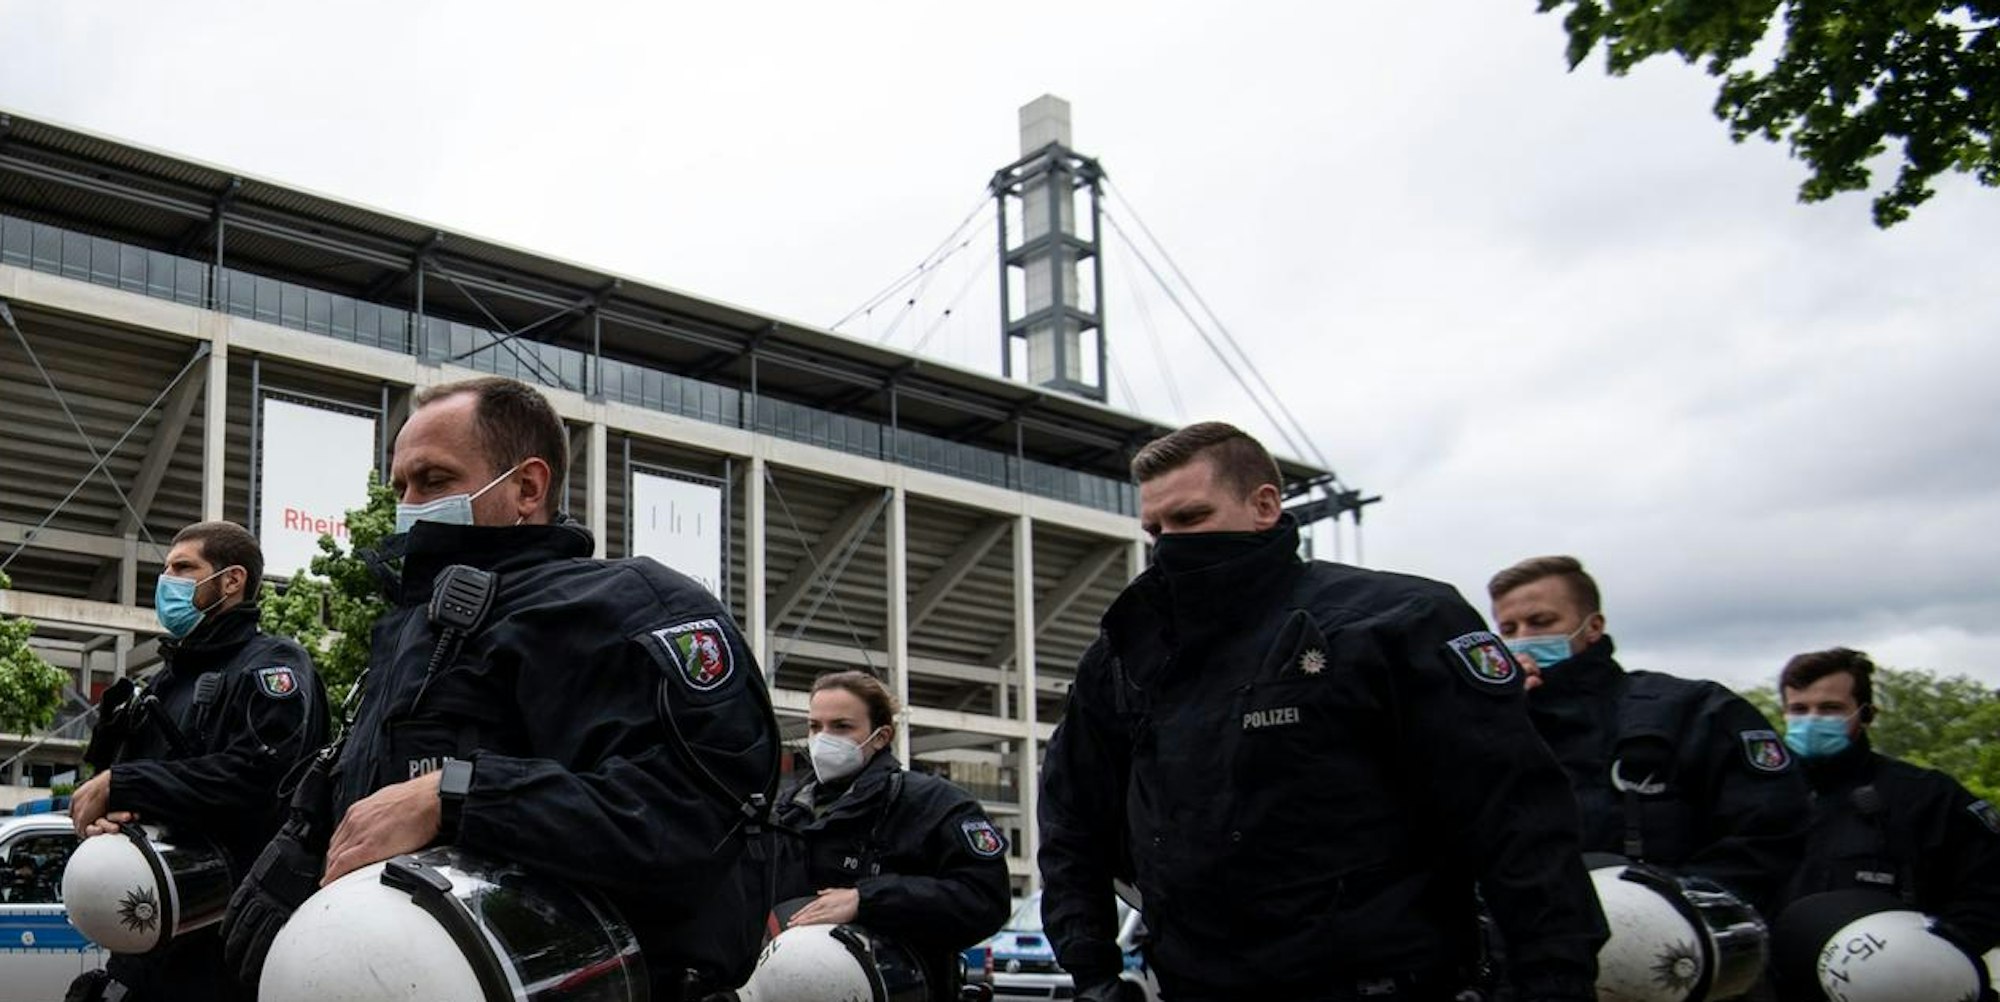 Kölner Polizei vor dem Stadion